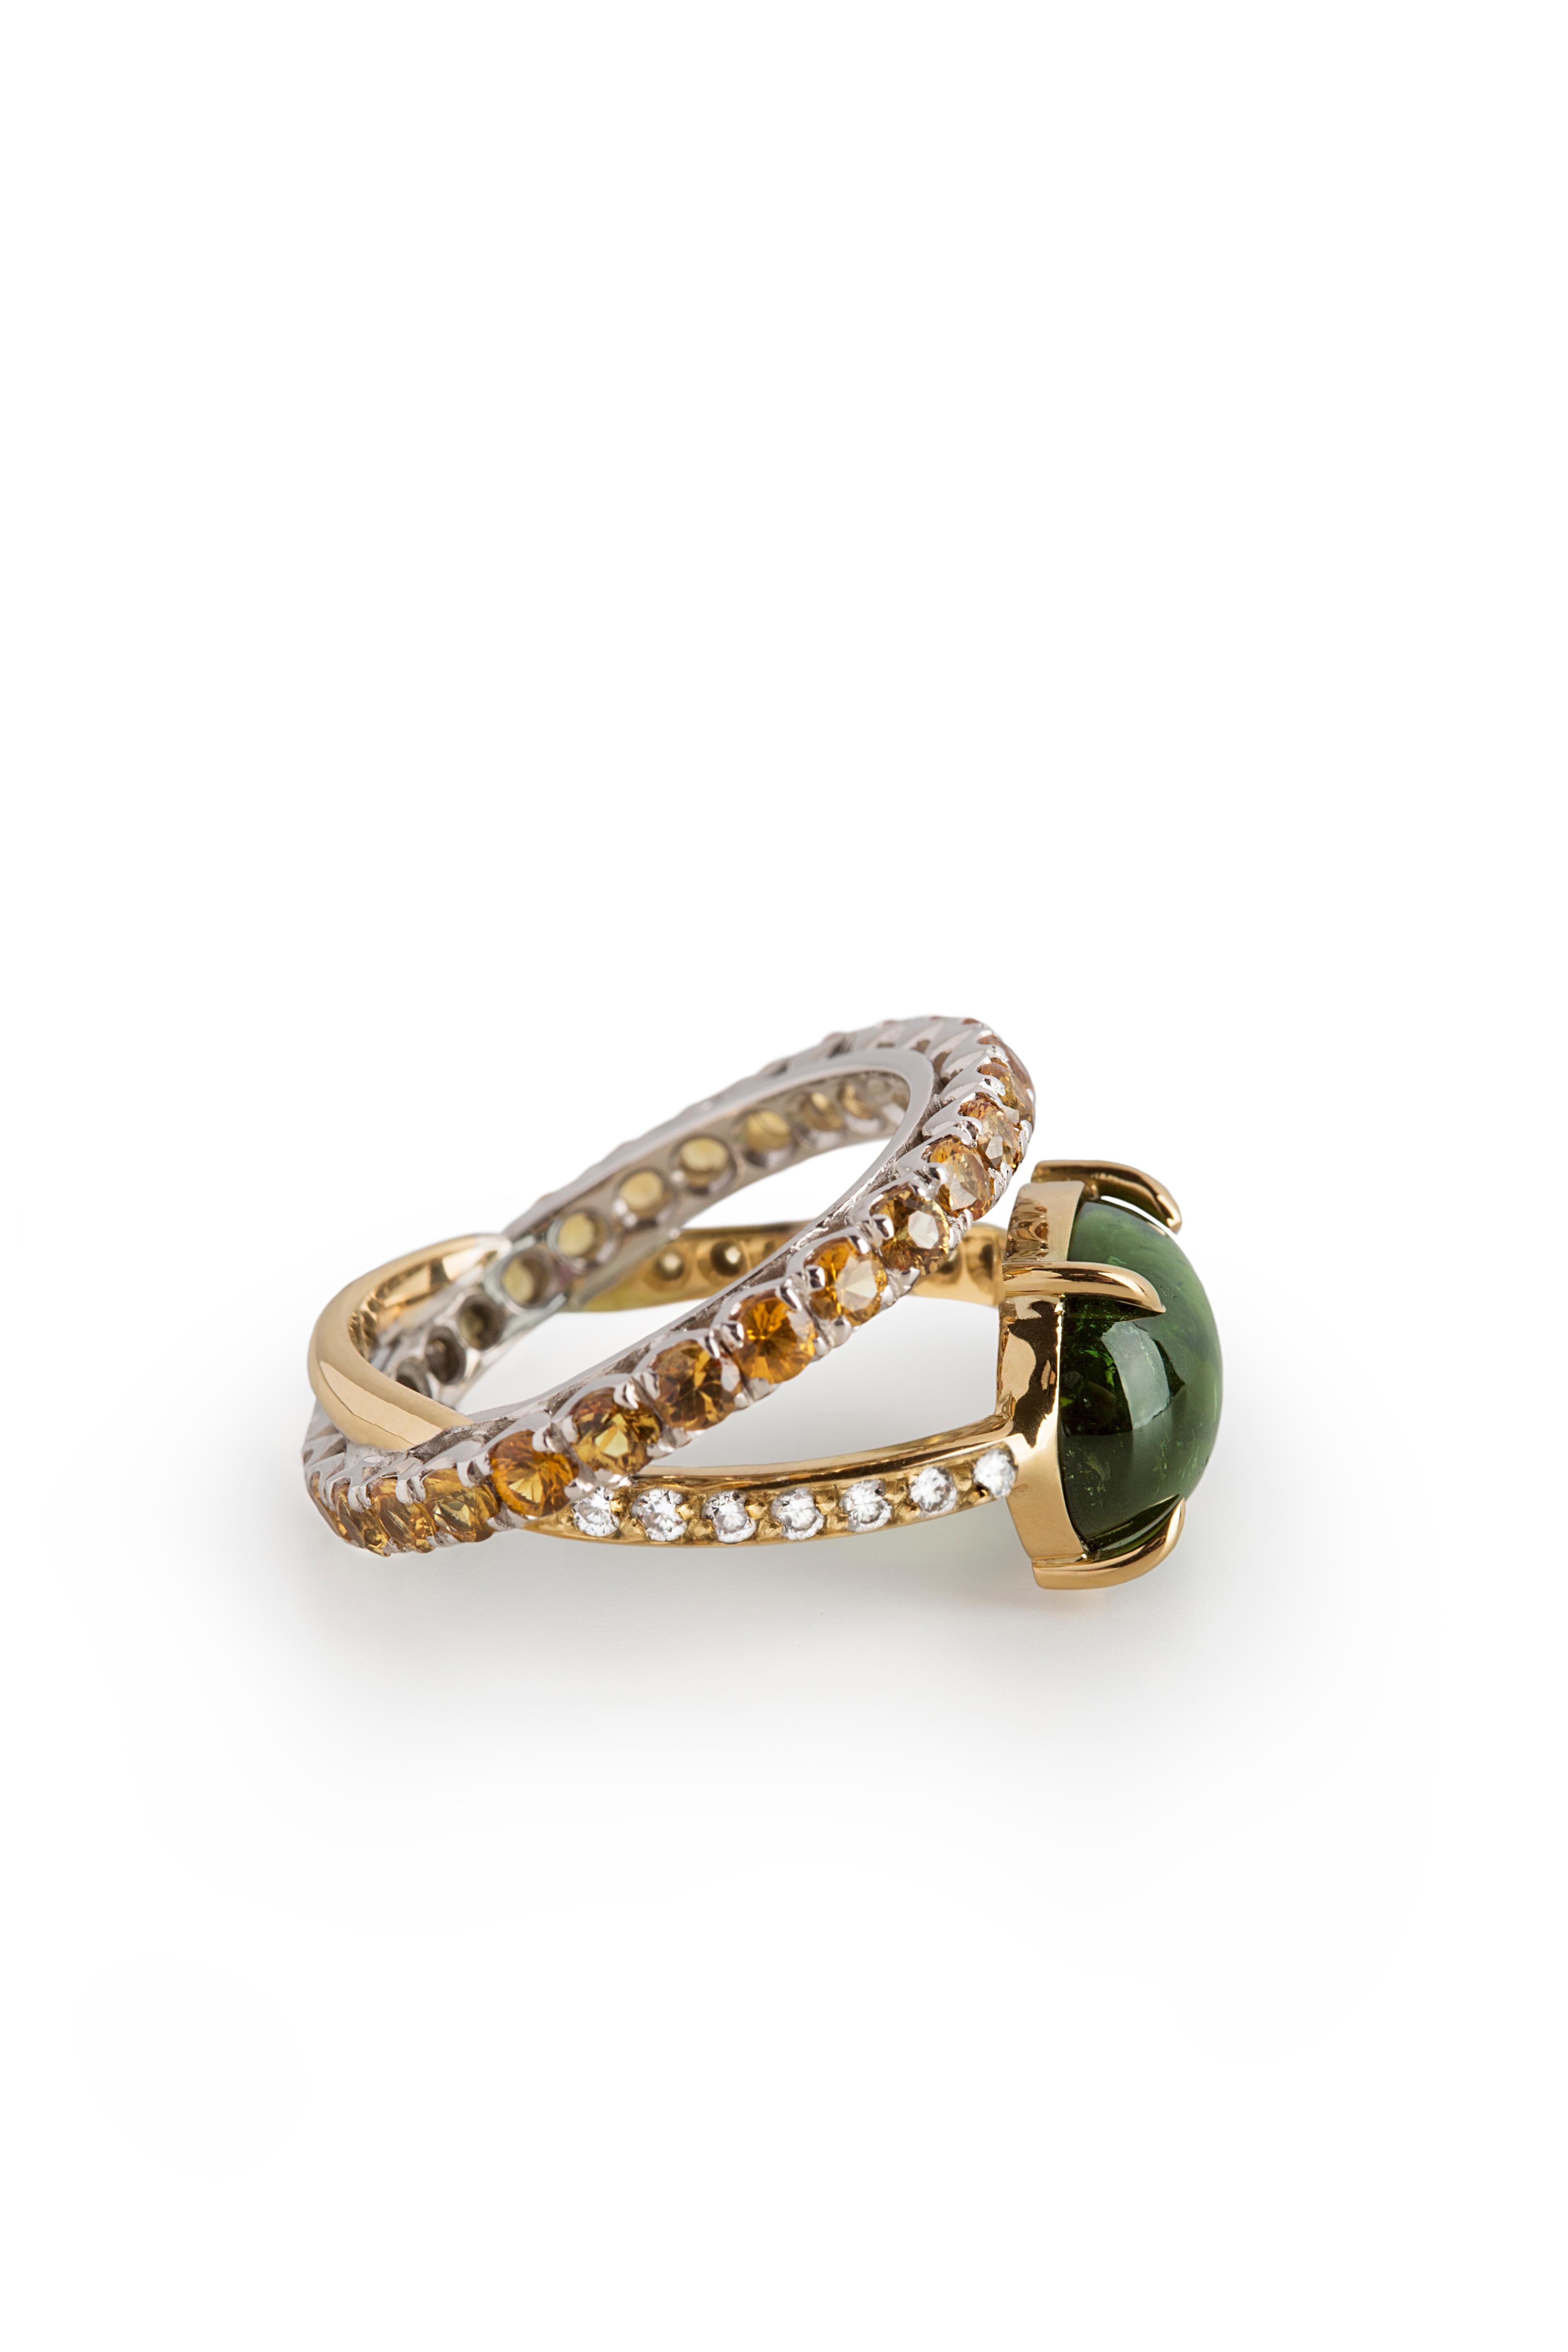 Mixed Cut Modern 18 K Gold 4.26 karat Green Tourmaline 0.10 Karat Diamonds Sapphires Ring For Sale